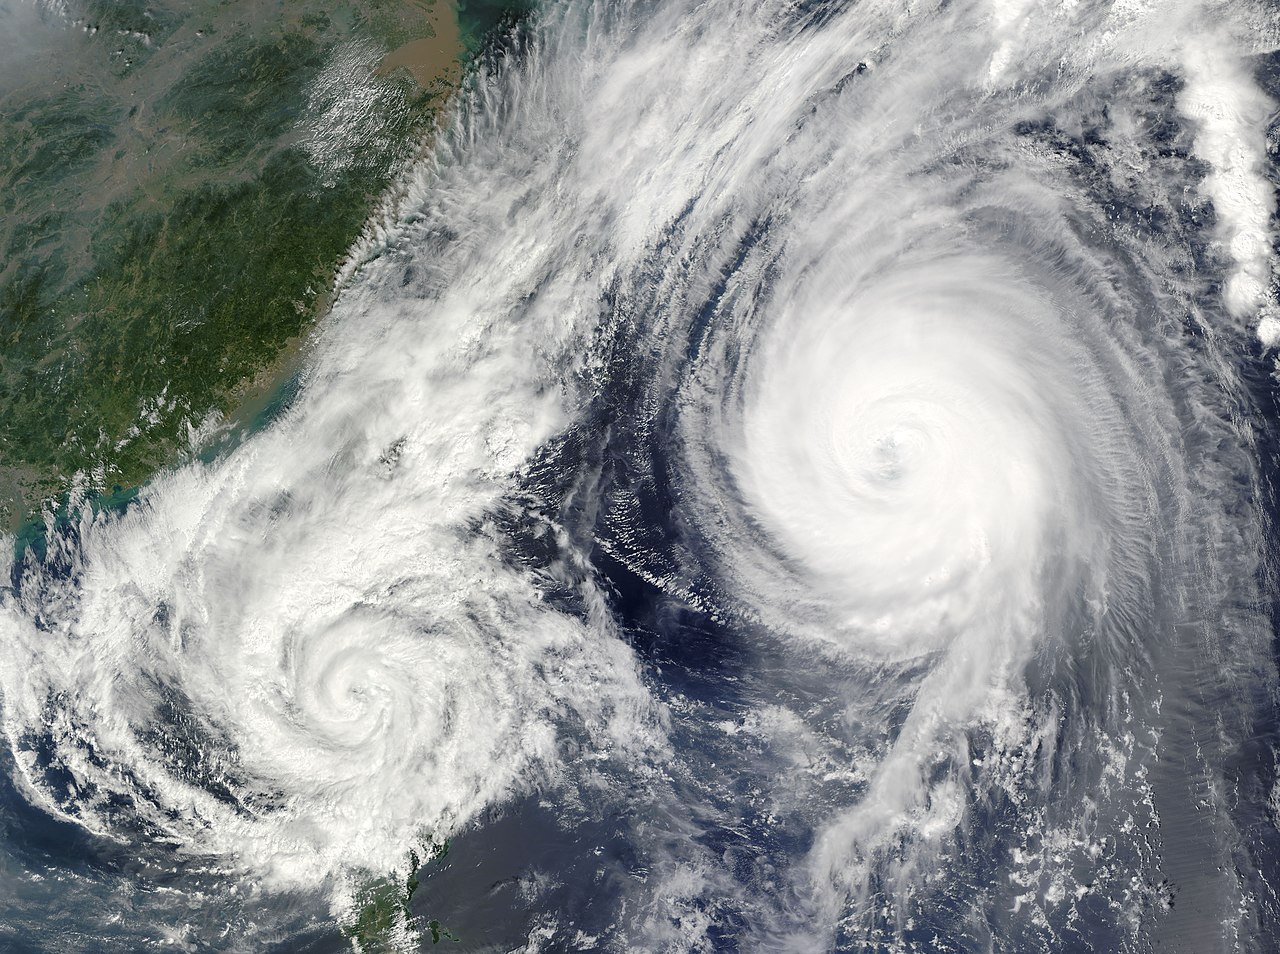 태풍, 허리케인 등이 15일 이내에 동시에 발생해 더 강력해지는 경우도 늘어난다. 사진은 2009년 10월 초 태풍 파마(왼쪽)와 태풍 멜로르(오른쪽)가 필리핀해에서 동시에 발생한 모습. 위키피디아 제공